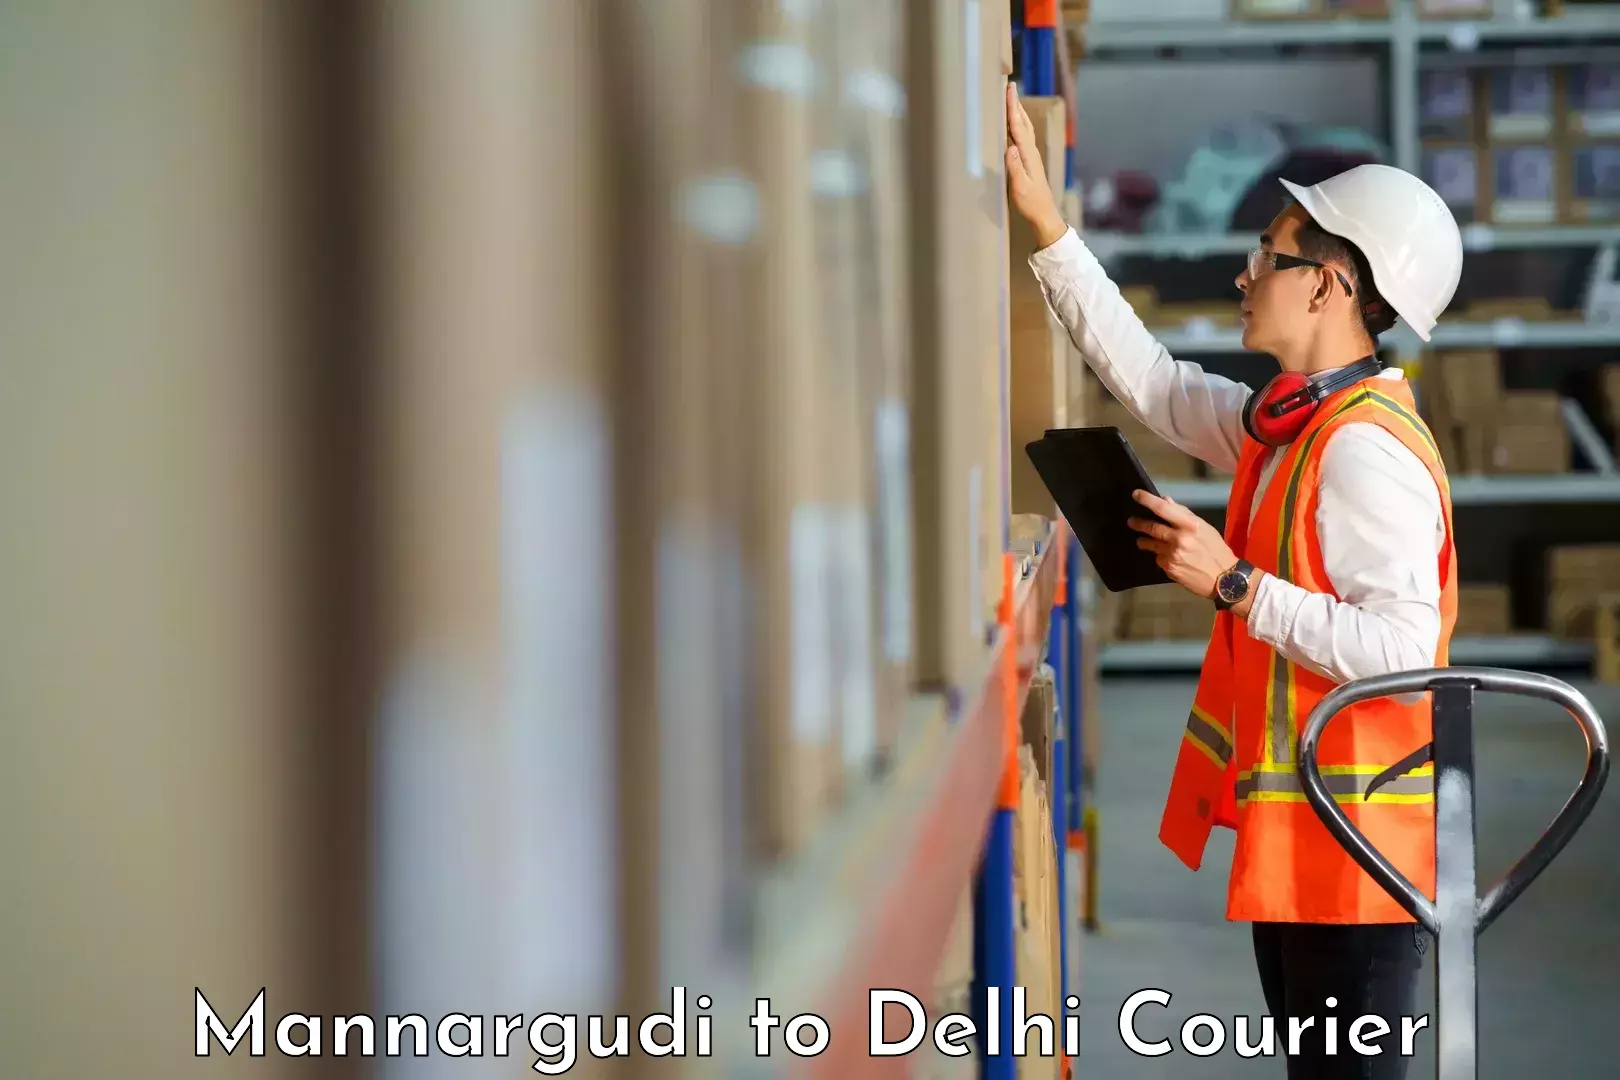 Express logistics providers Mannargudi to East Delhi